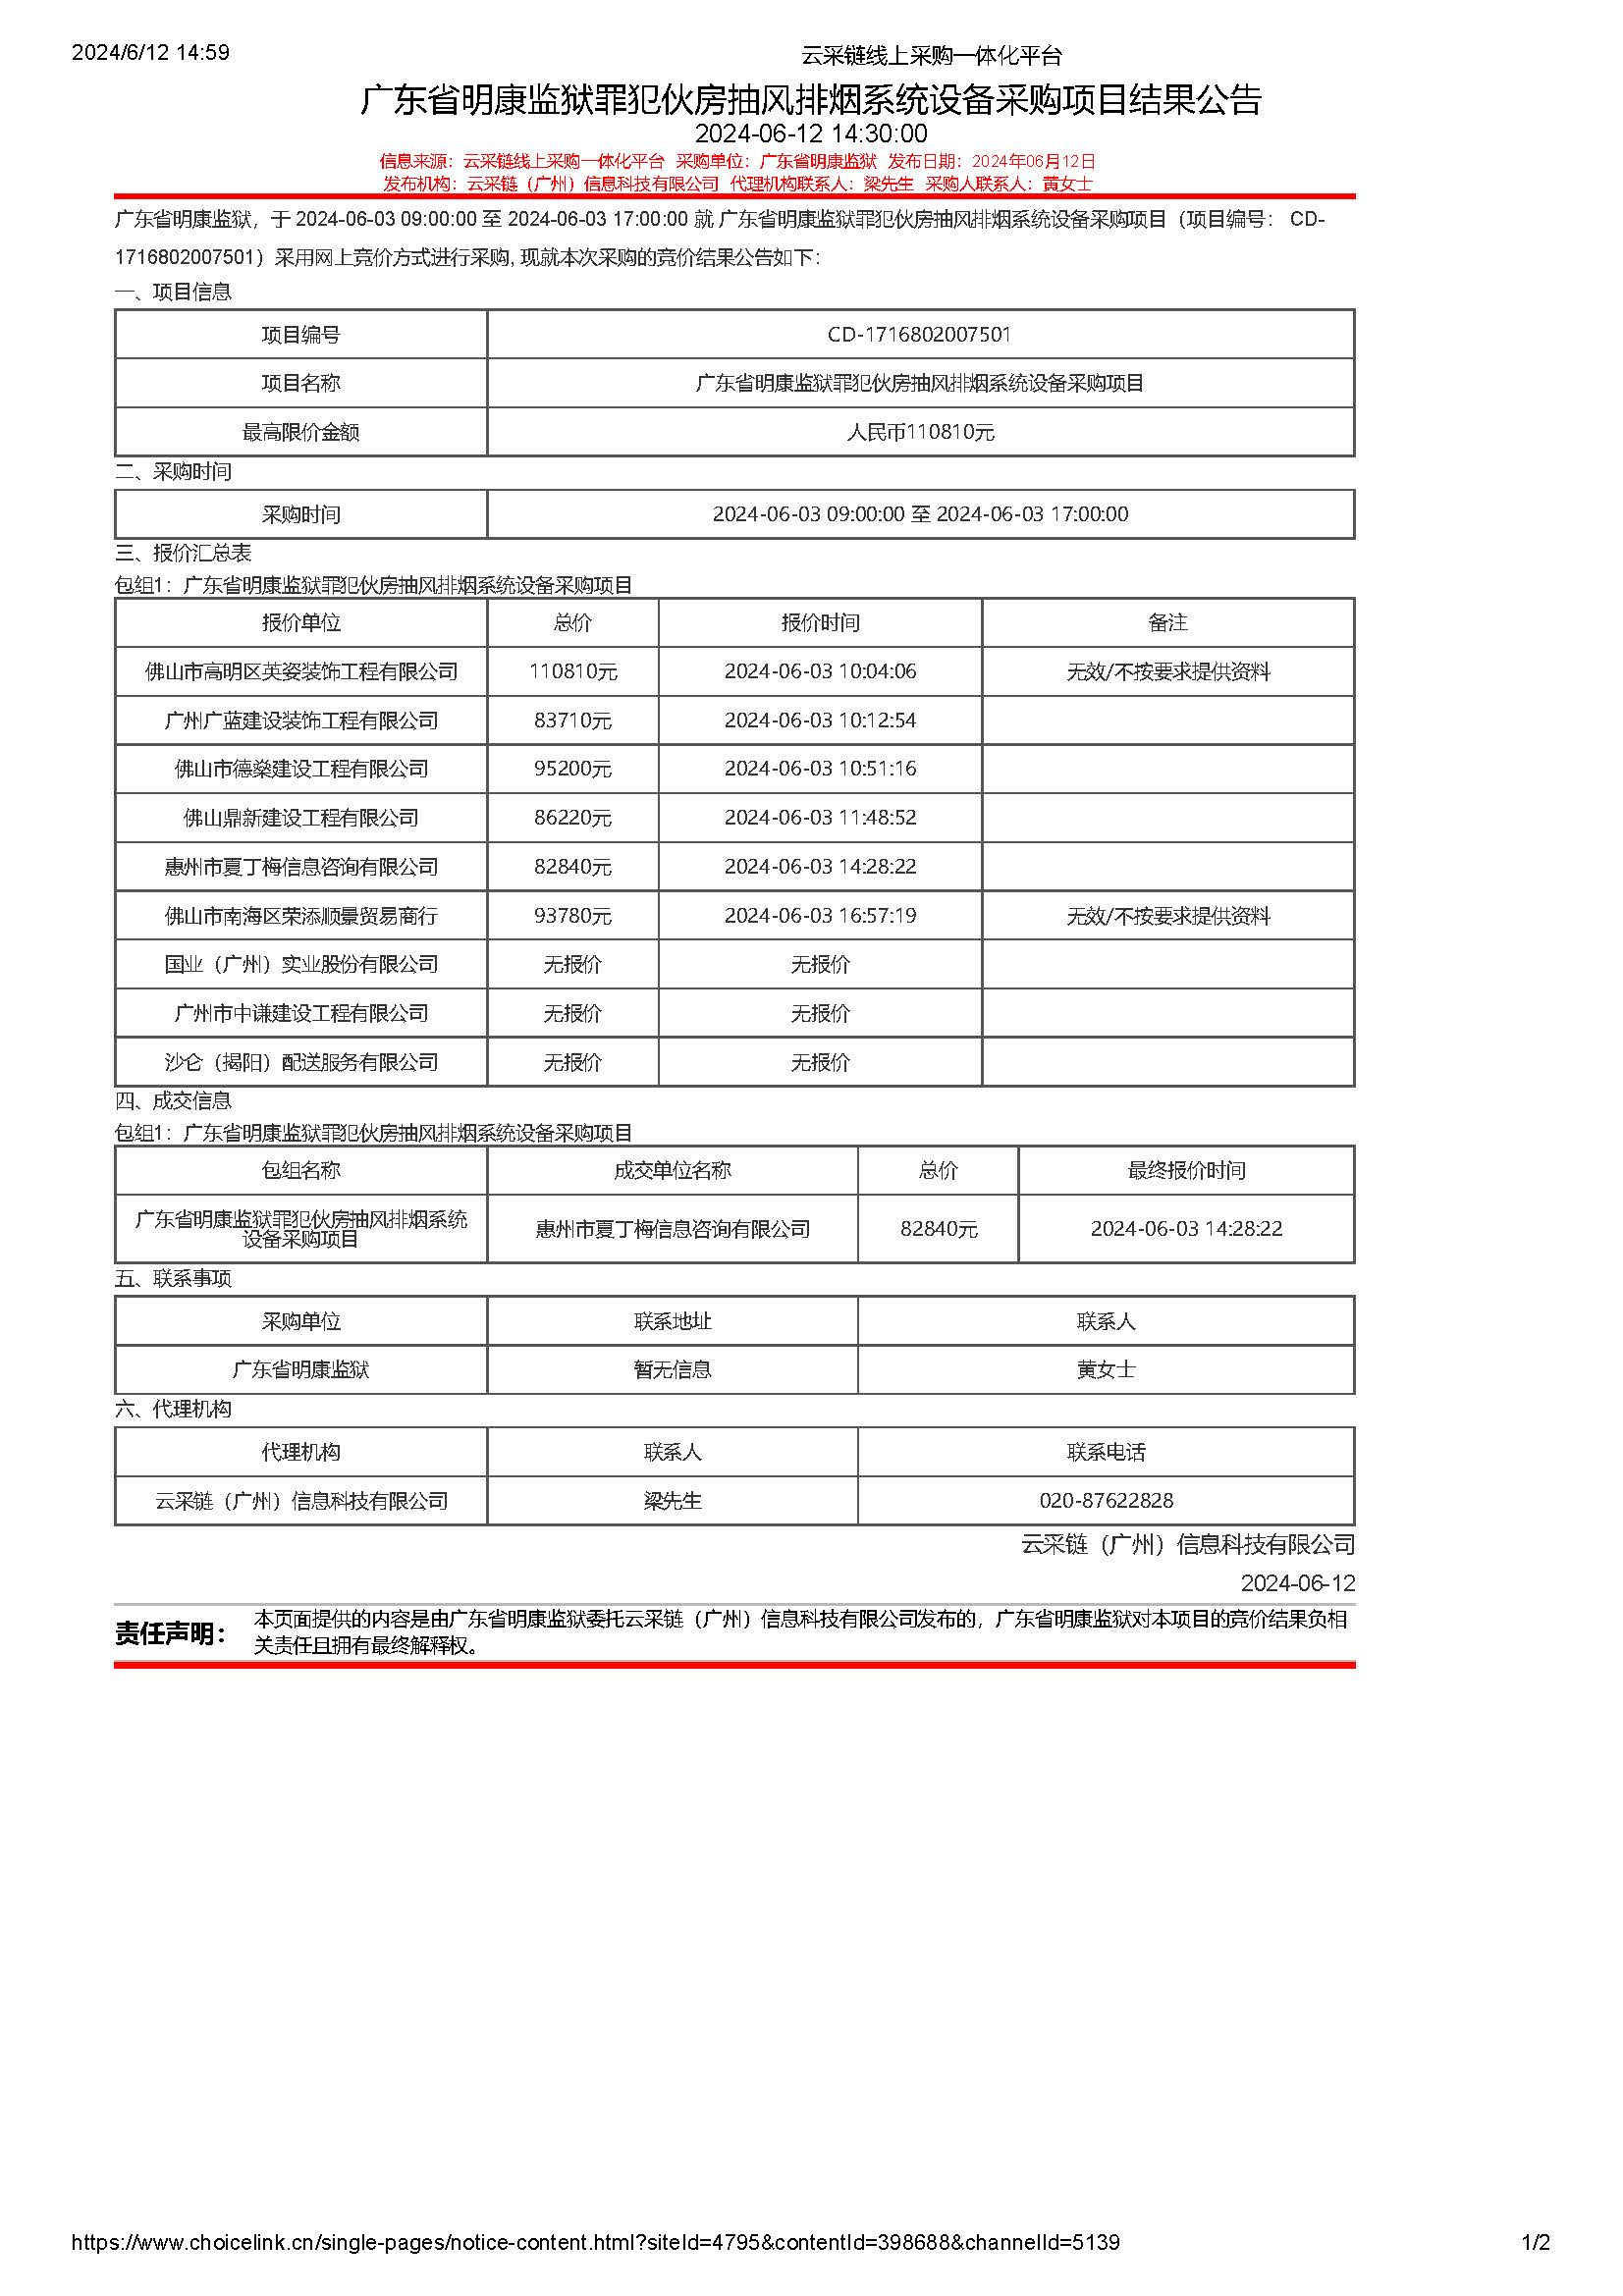 62.98广东省明康监狱罪犯伙房抽风排烟系统设备采购项目结果公告_页面_1.jpg